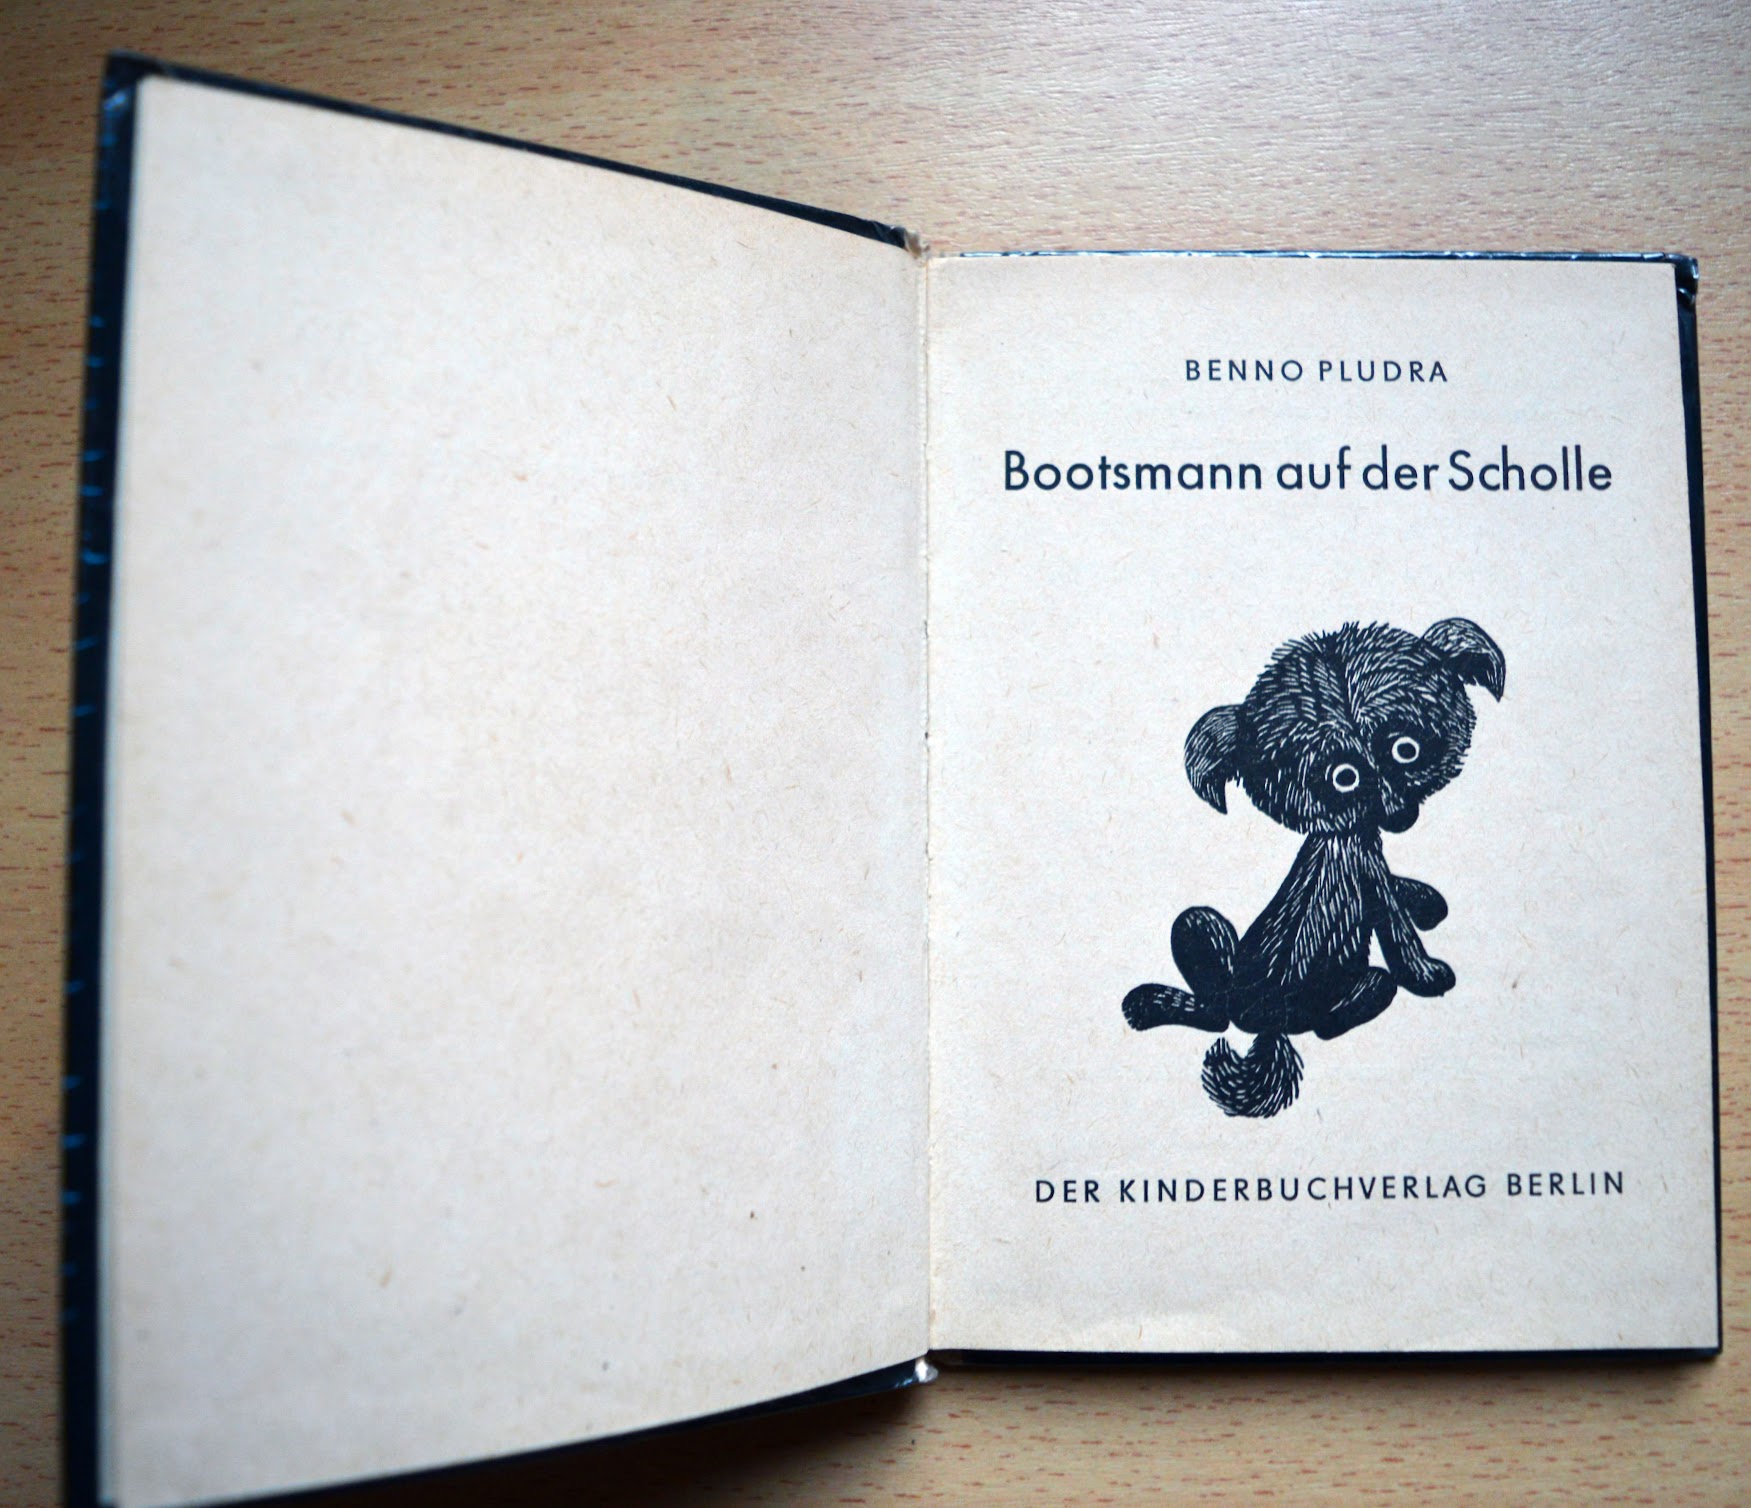 Benno Pludra - Bootsmann auf der Scholle - Trompeter-Buch - 1968